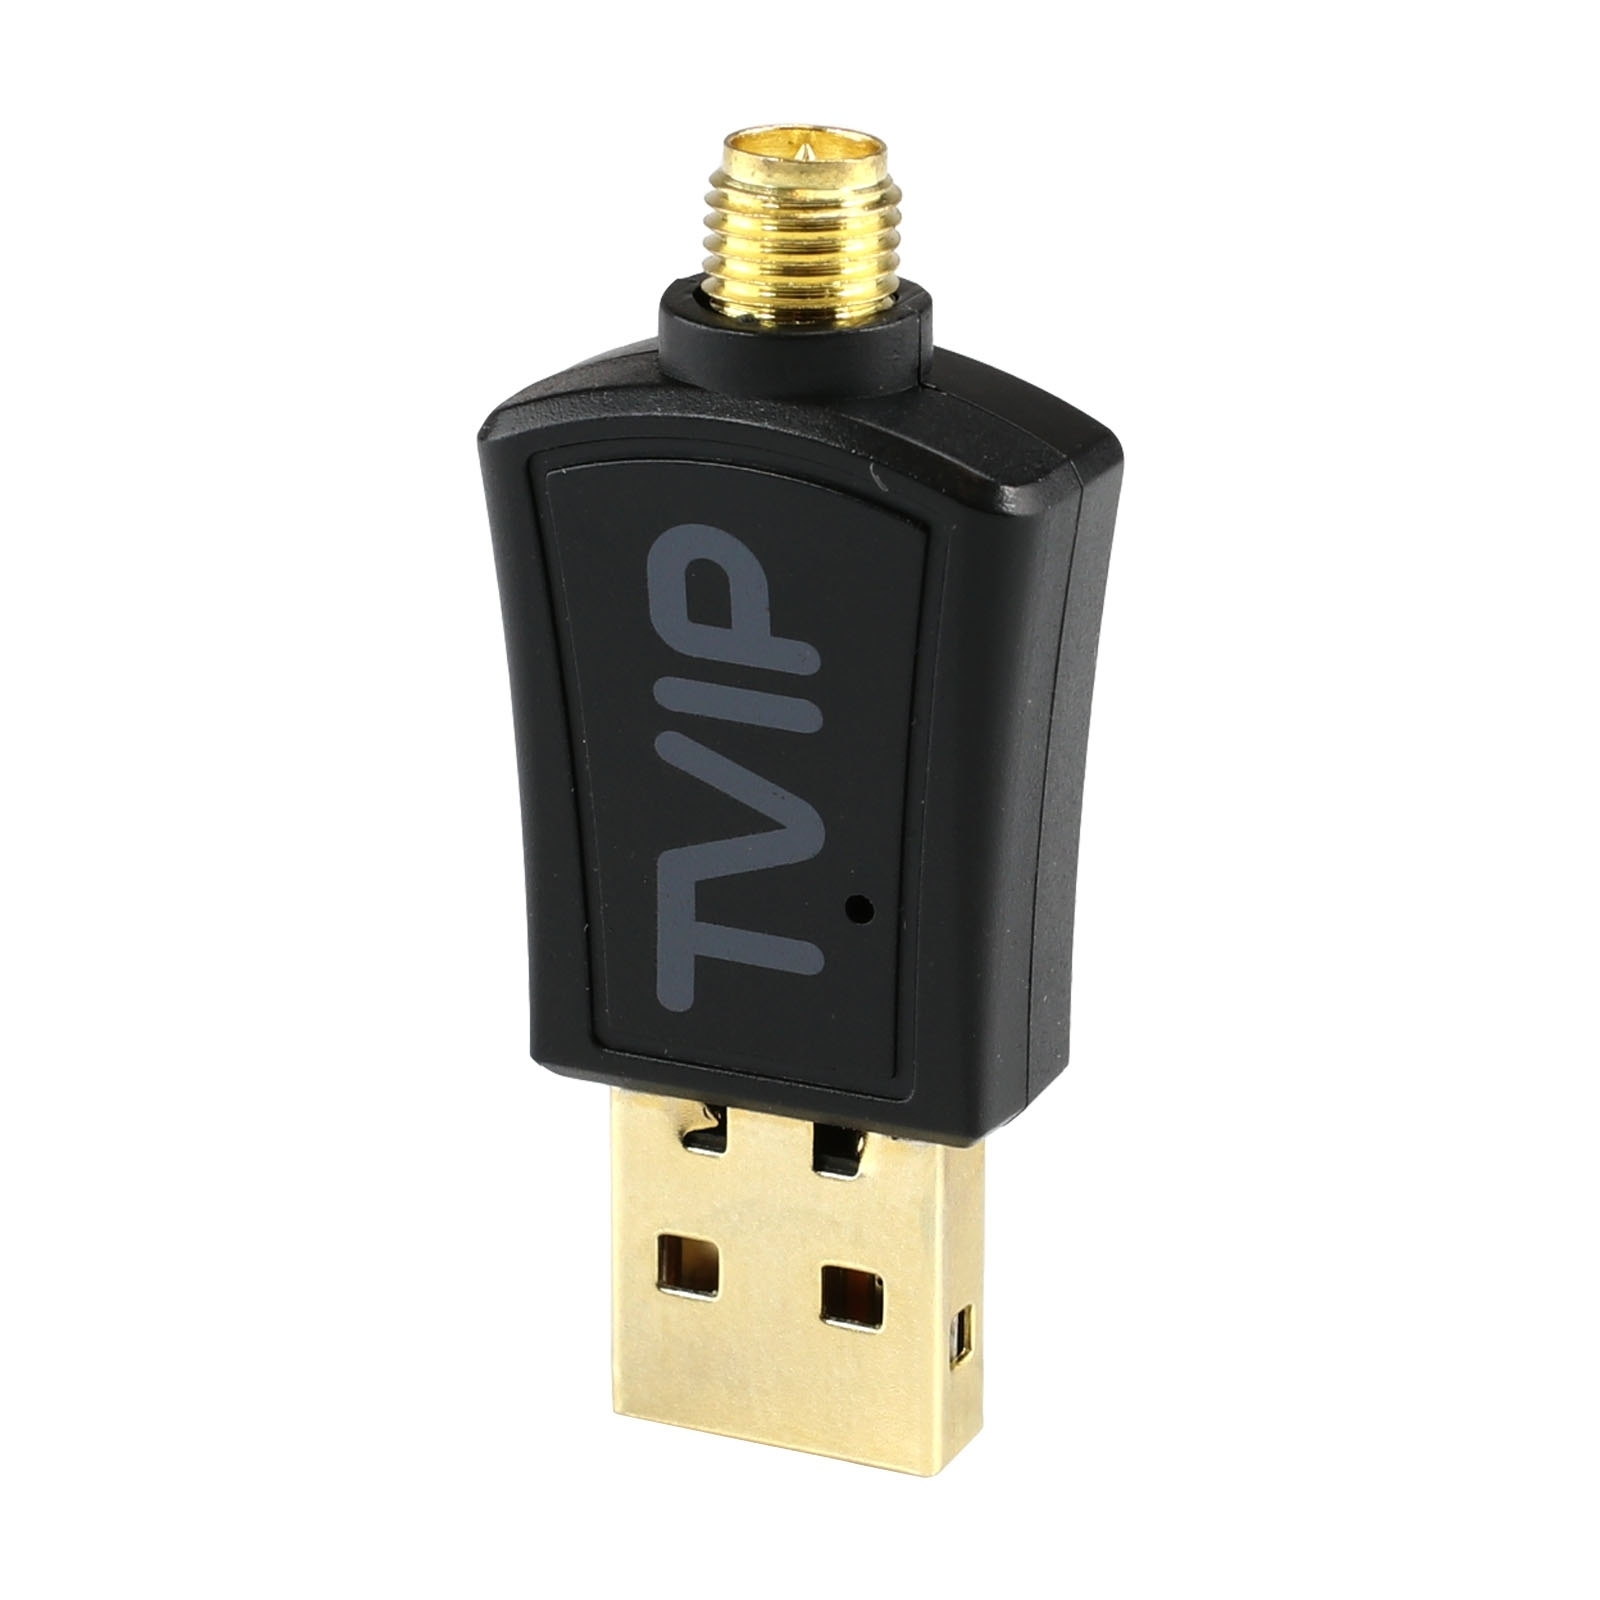 TVIP 600Mbit 2.4/5 Wlan mit Antenne Stick GHz